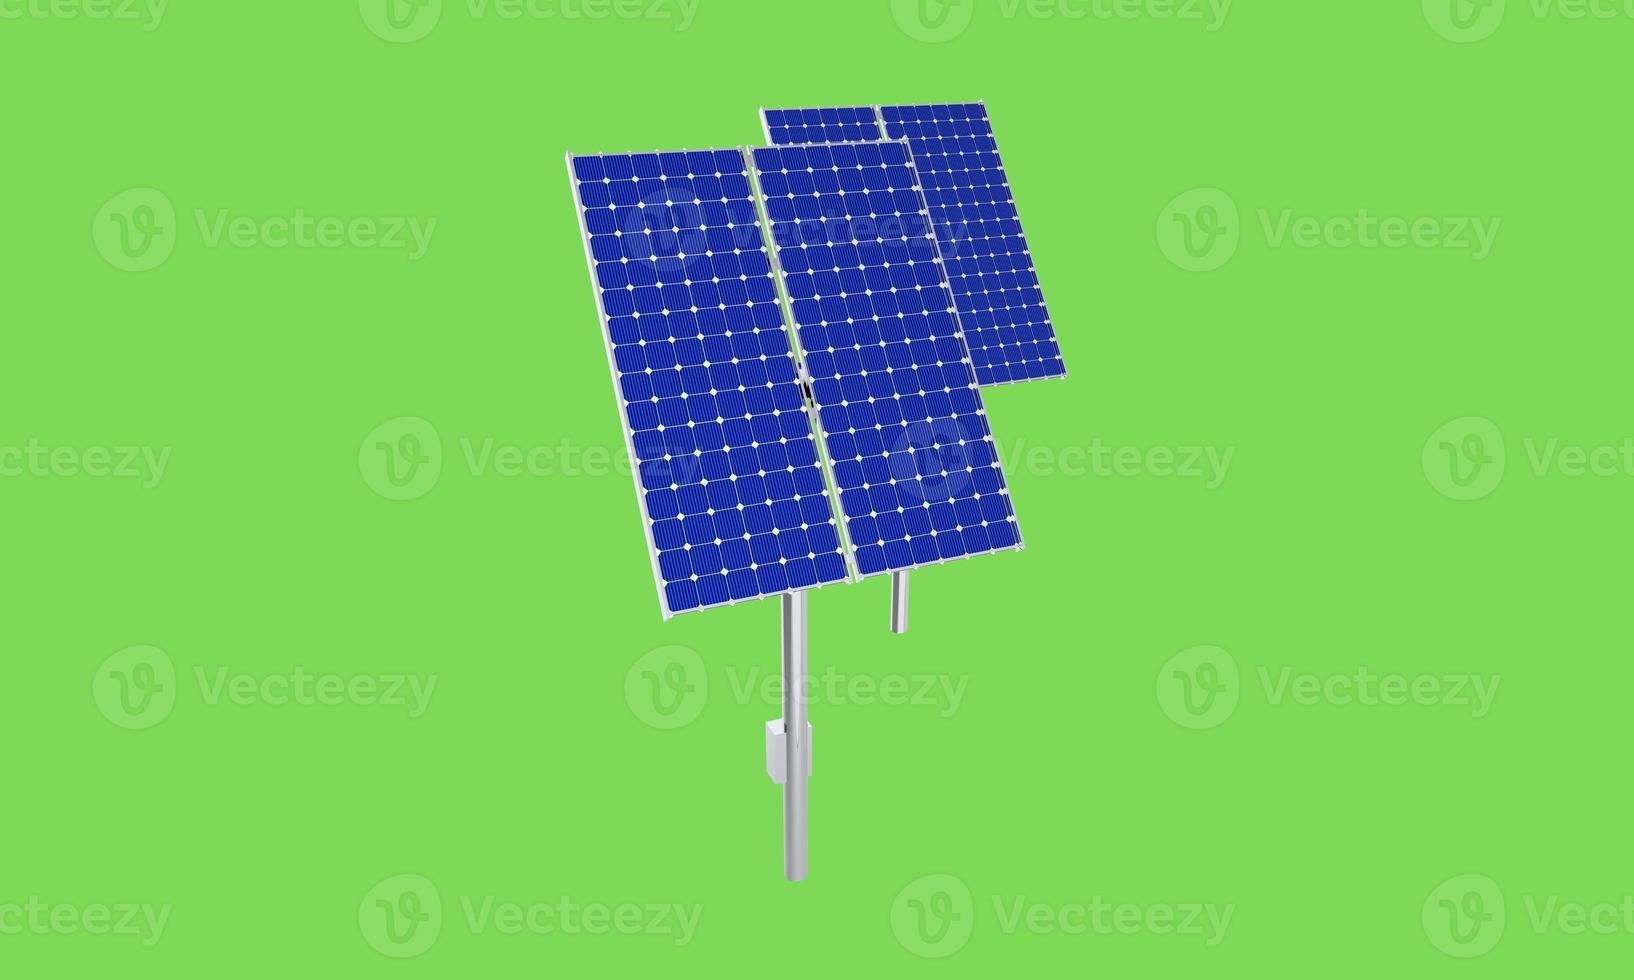 Solar Panel Greenscreen là lựa chọn hoàn hảo cho những ai muốn bảo vệ môi trường và giảm thiểu chi phí cho năng lượng. Với kỹ thuật hiện đại, các tấm panel xanh sẽ giúp bạn chụp ảnh và quay phim một cách sáng tạo, đồng thời đảm bảo tiết kiệm điện năng. Hãy tham gia và đóng góp cho một tương lai xanh hơn nhé!